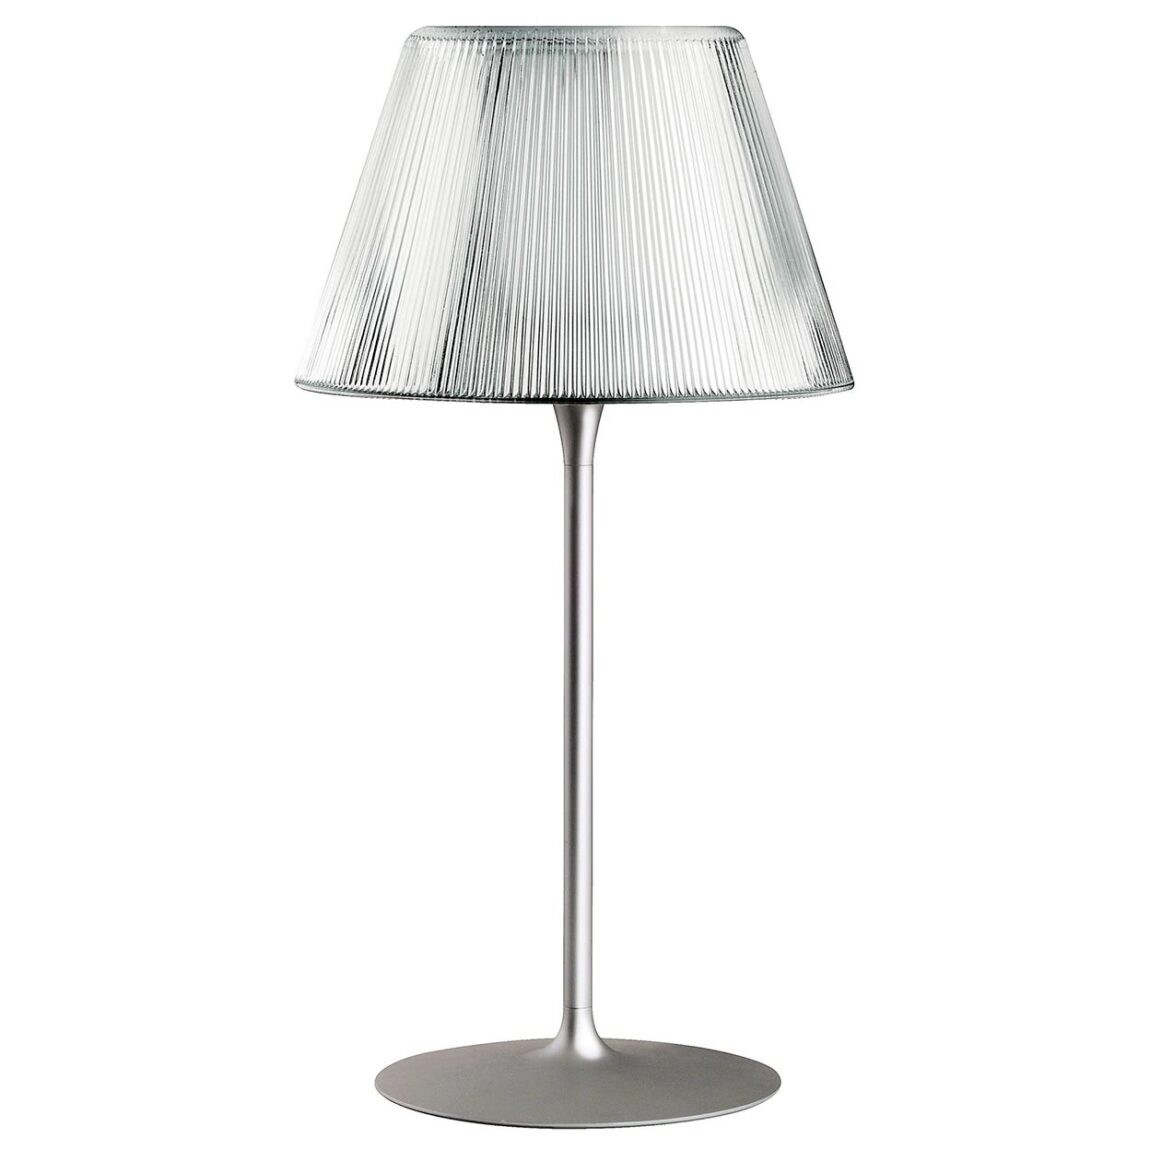 Flos designové stolní lampy Romeo